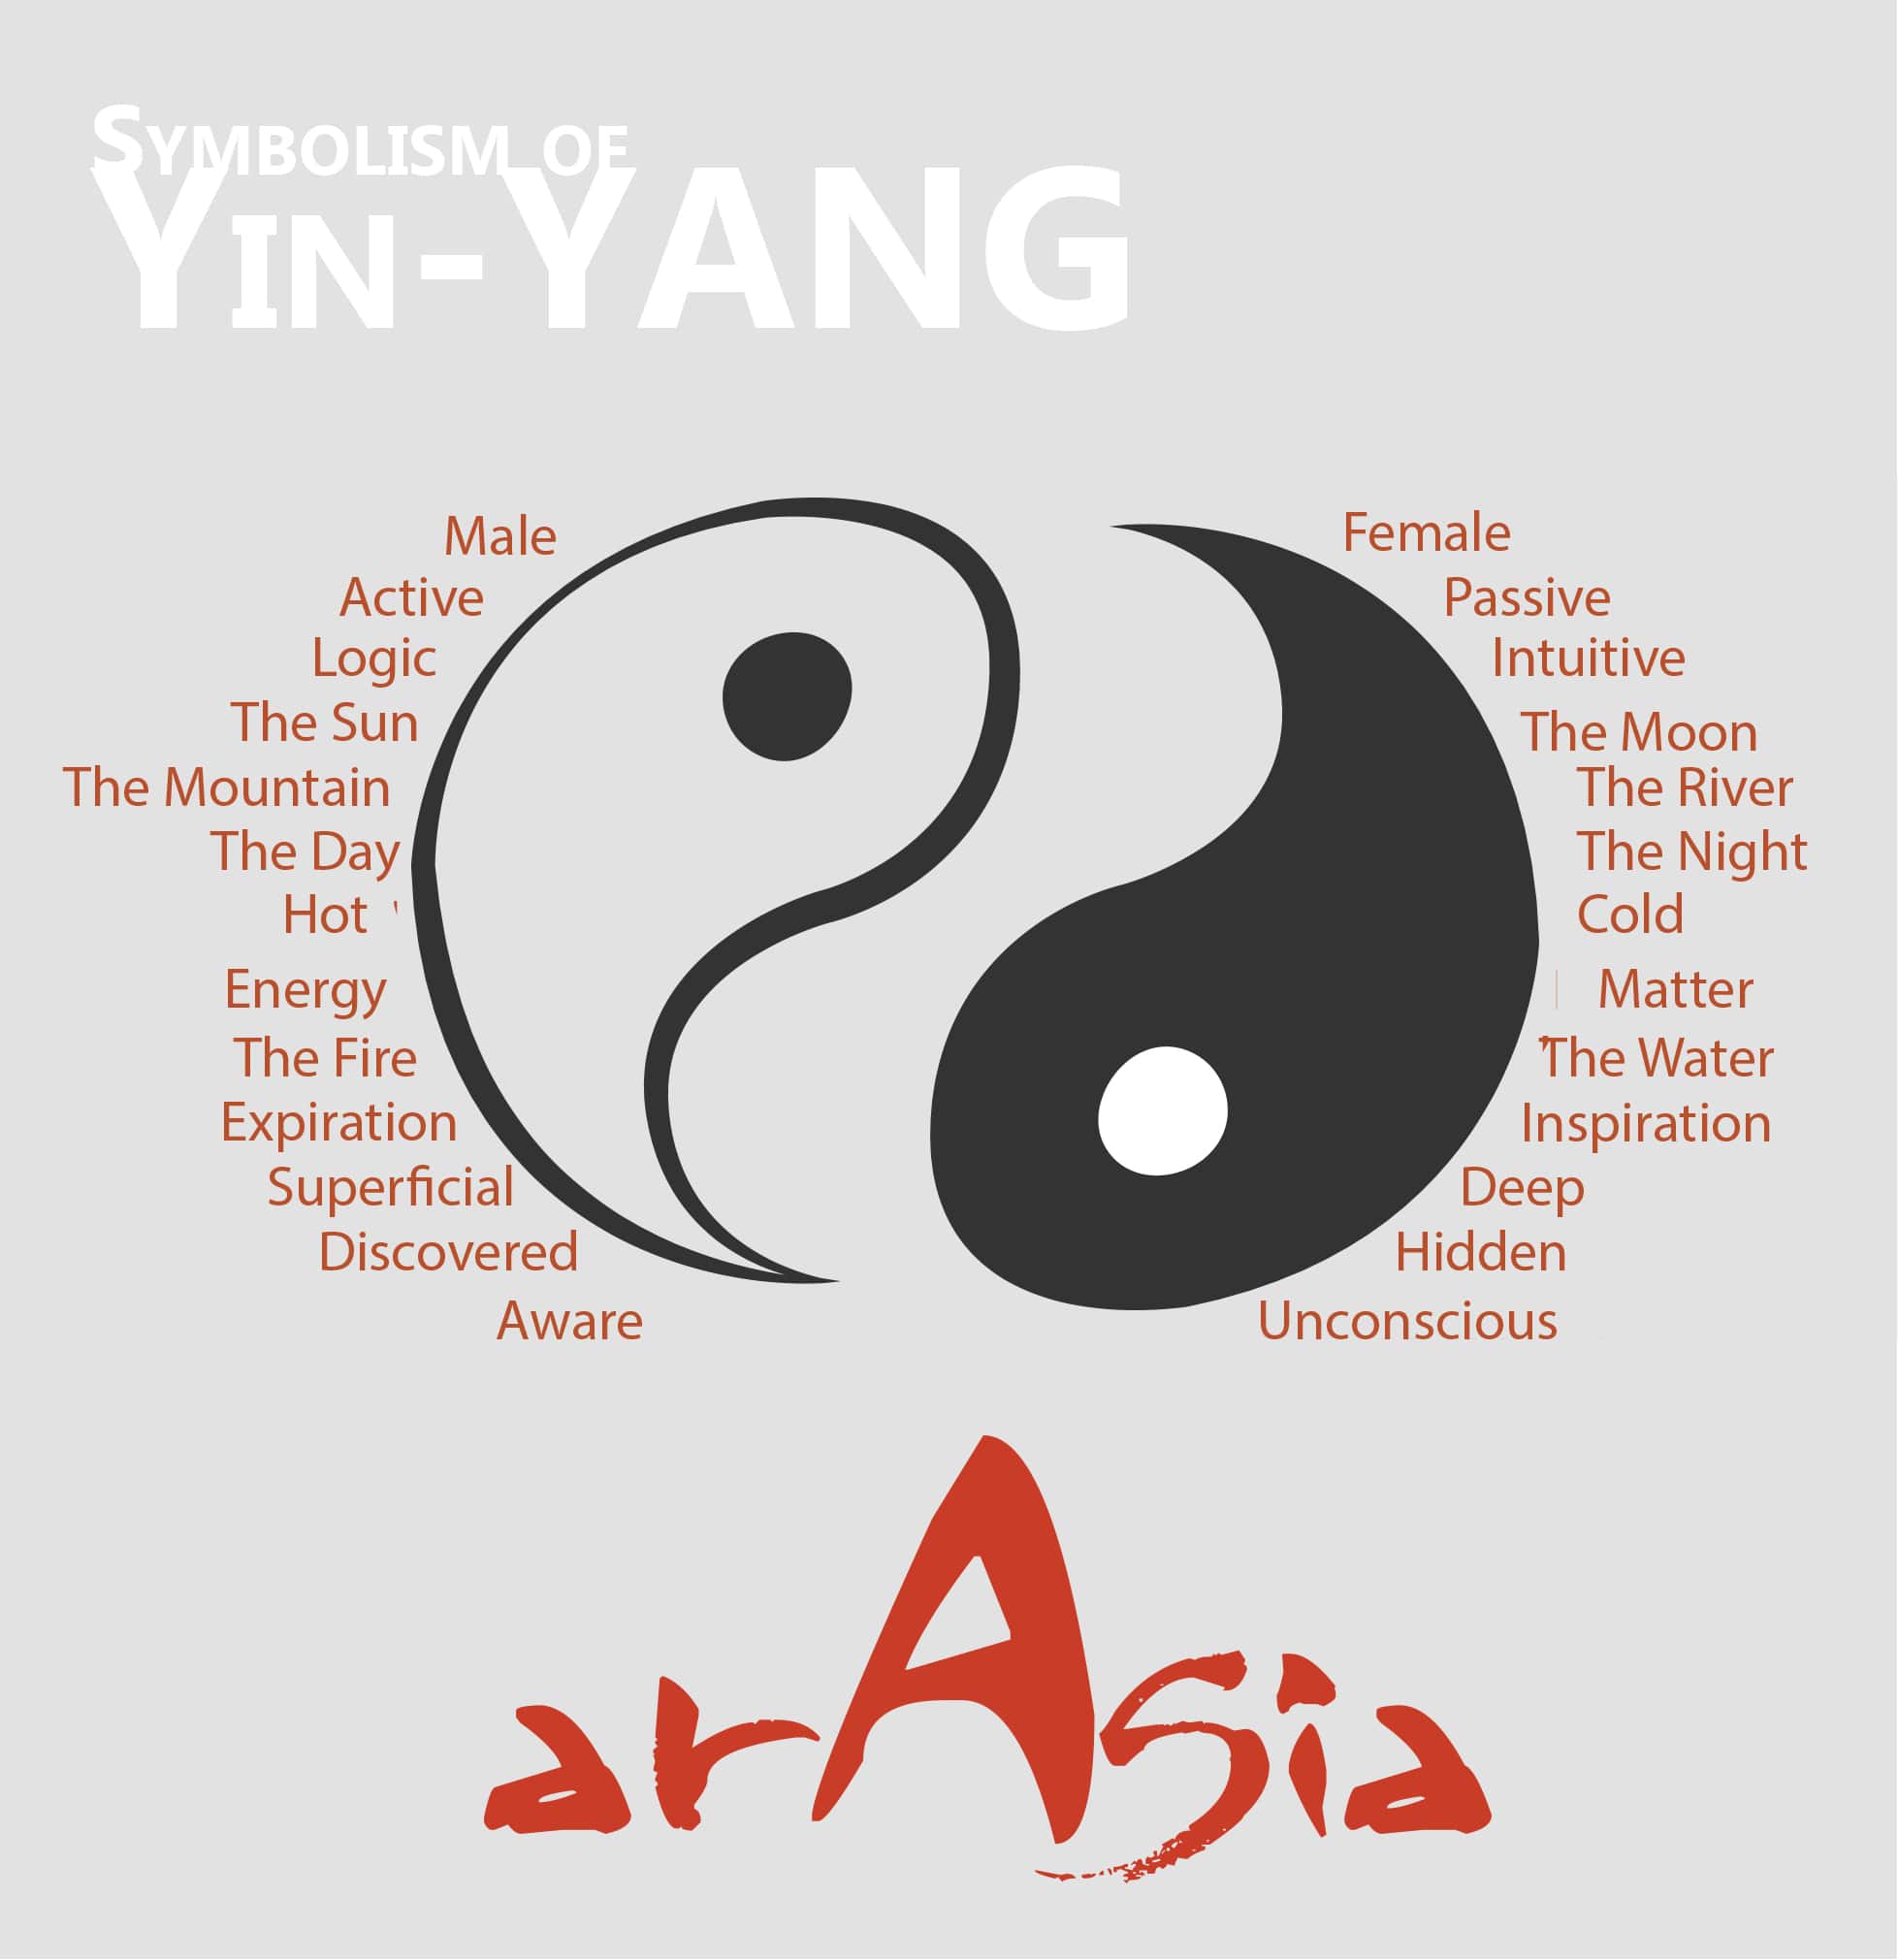 The yin yang symbol